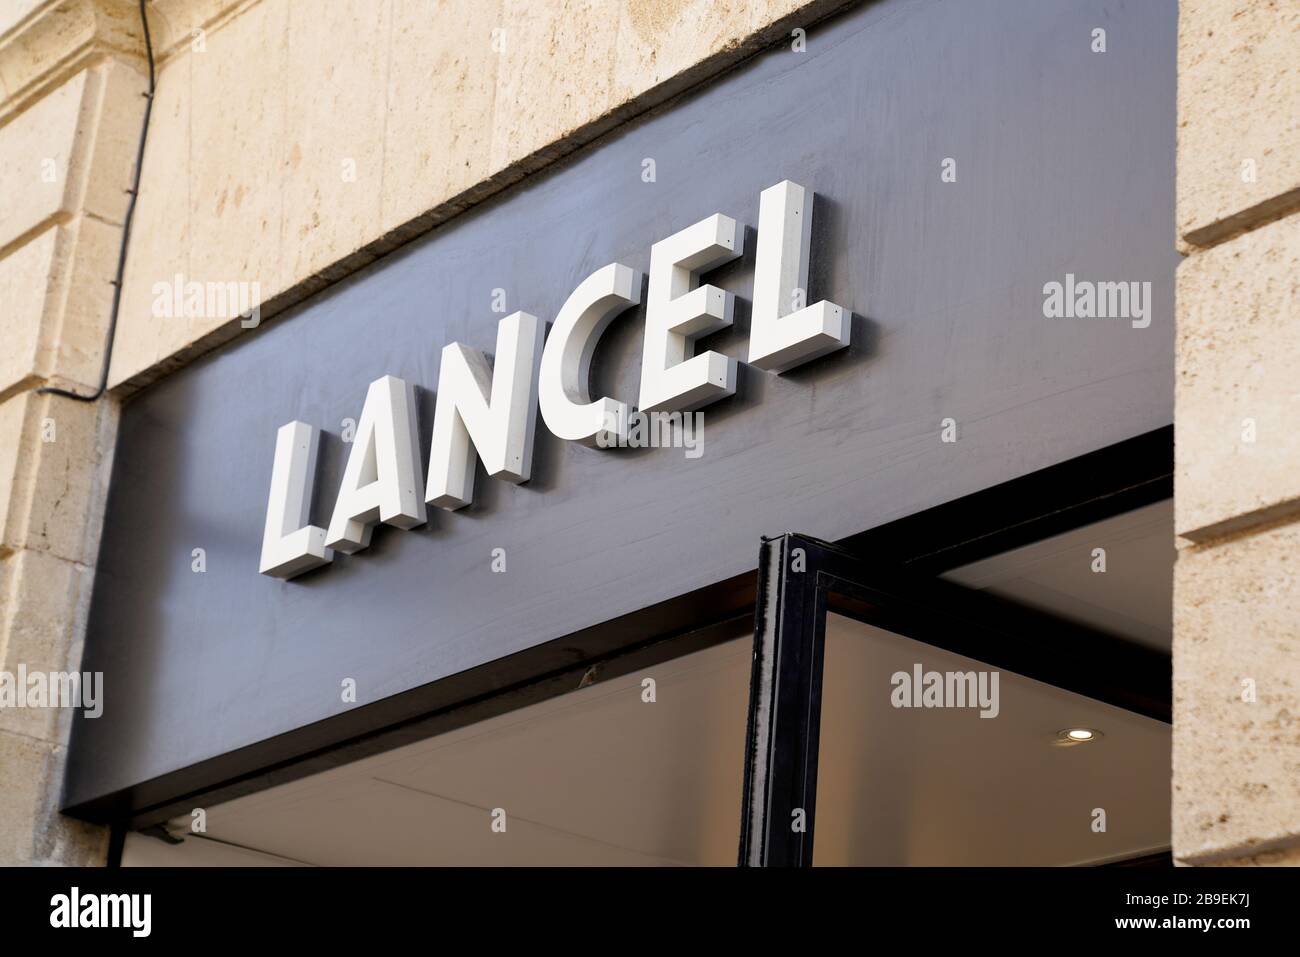 Bordeaux , Aquitaine / France - 09 18 2019 : shop sign Lancel Fashion Boutique store french Stock Photo